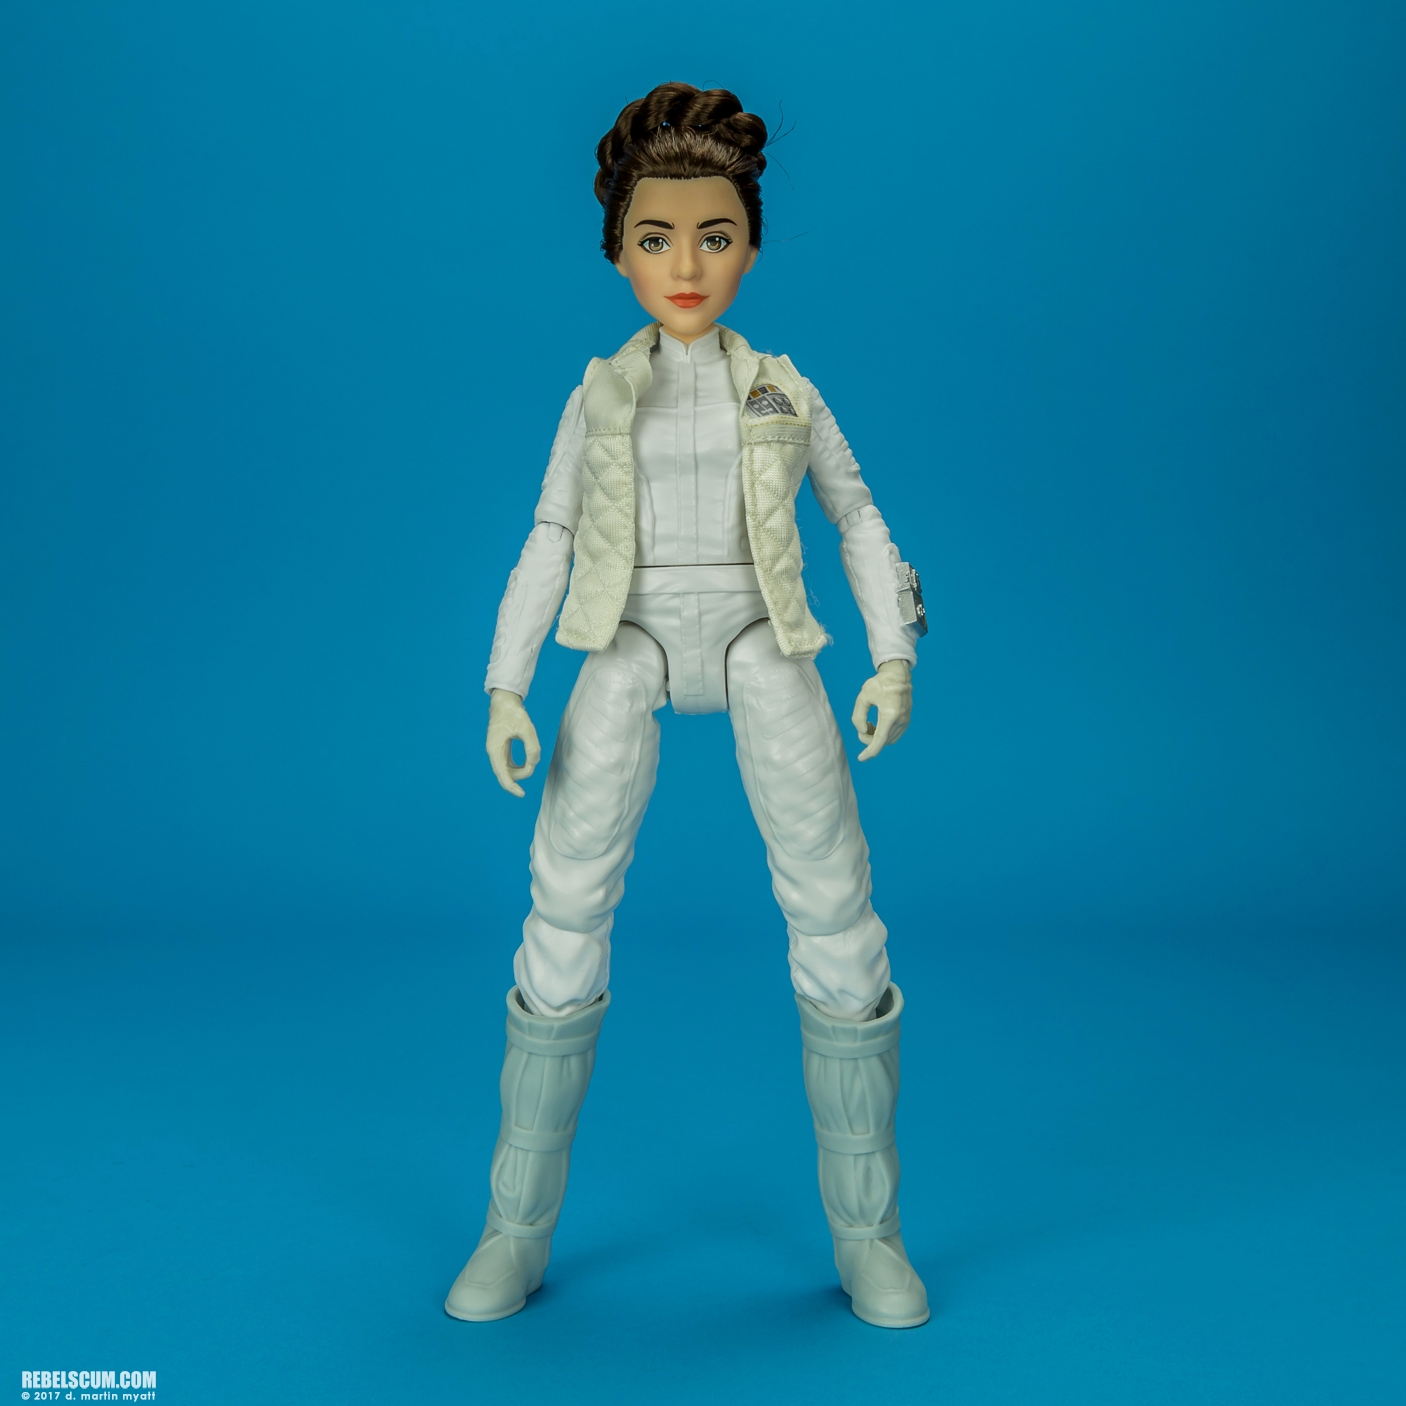 Forces-Of-Destiny-Princess-Leia-Organa-R2-D2-001.jpg